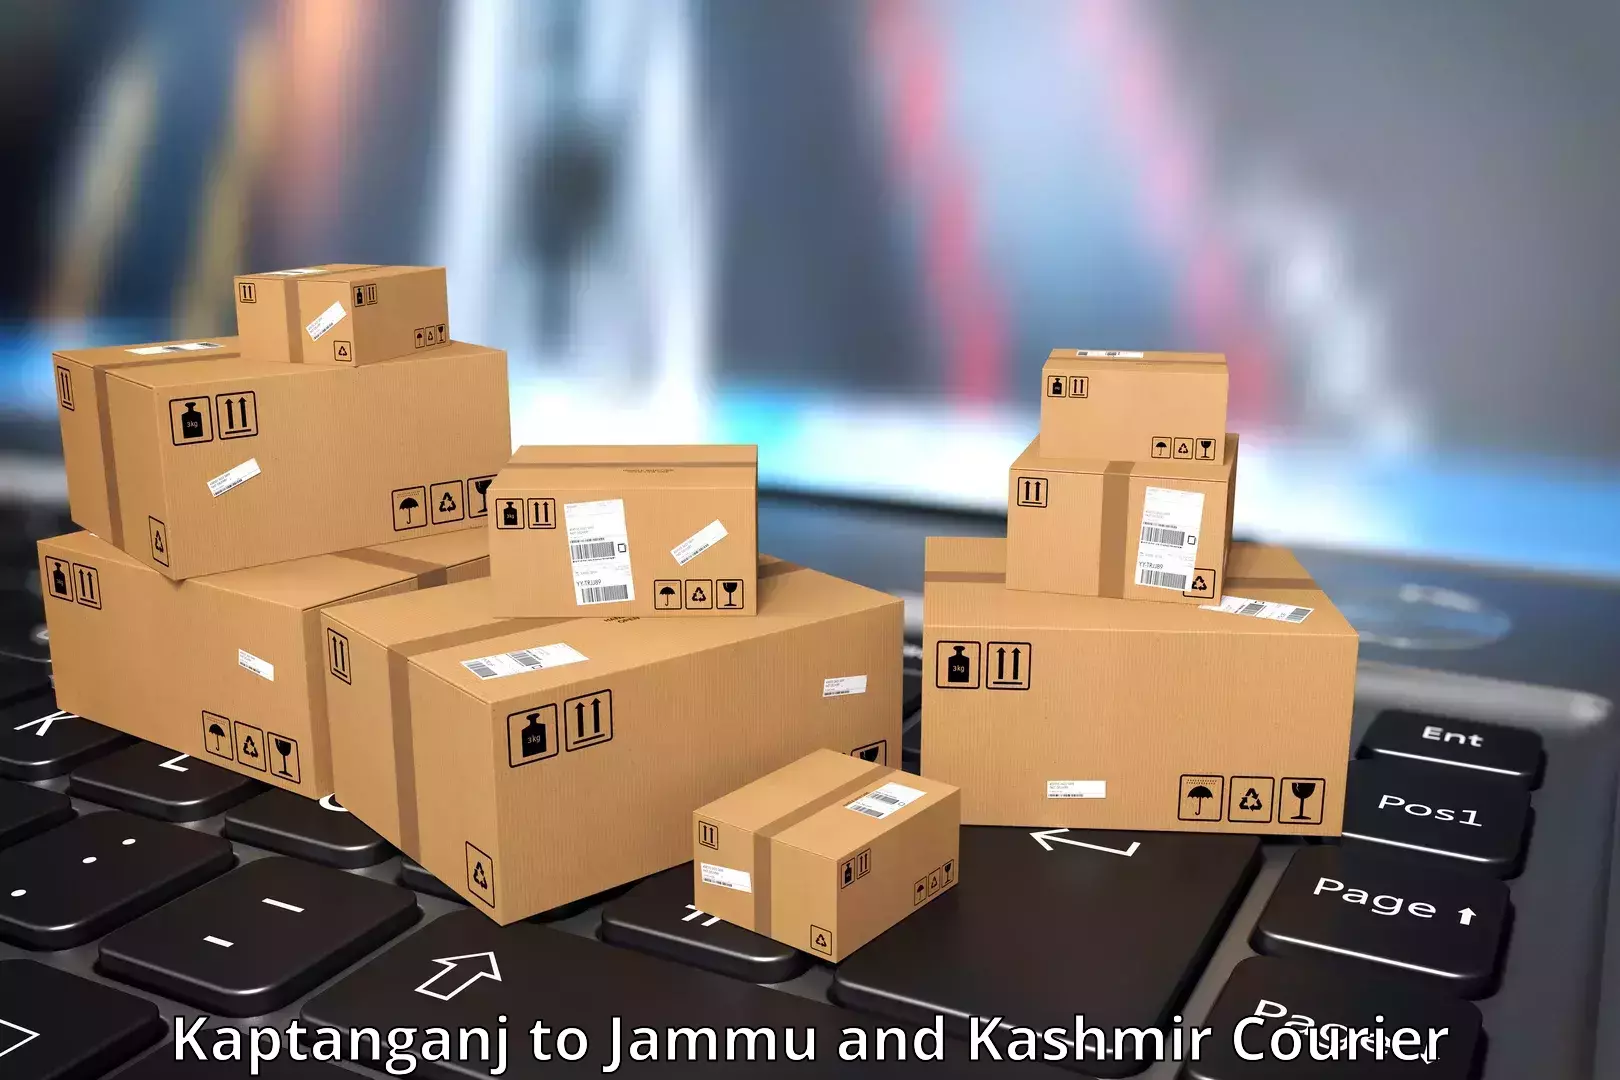 24-hour courier services Kaptanganj to Jammu and Kashmir